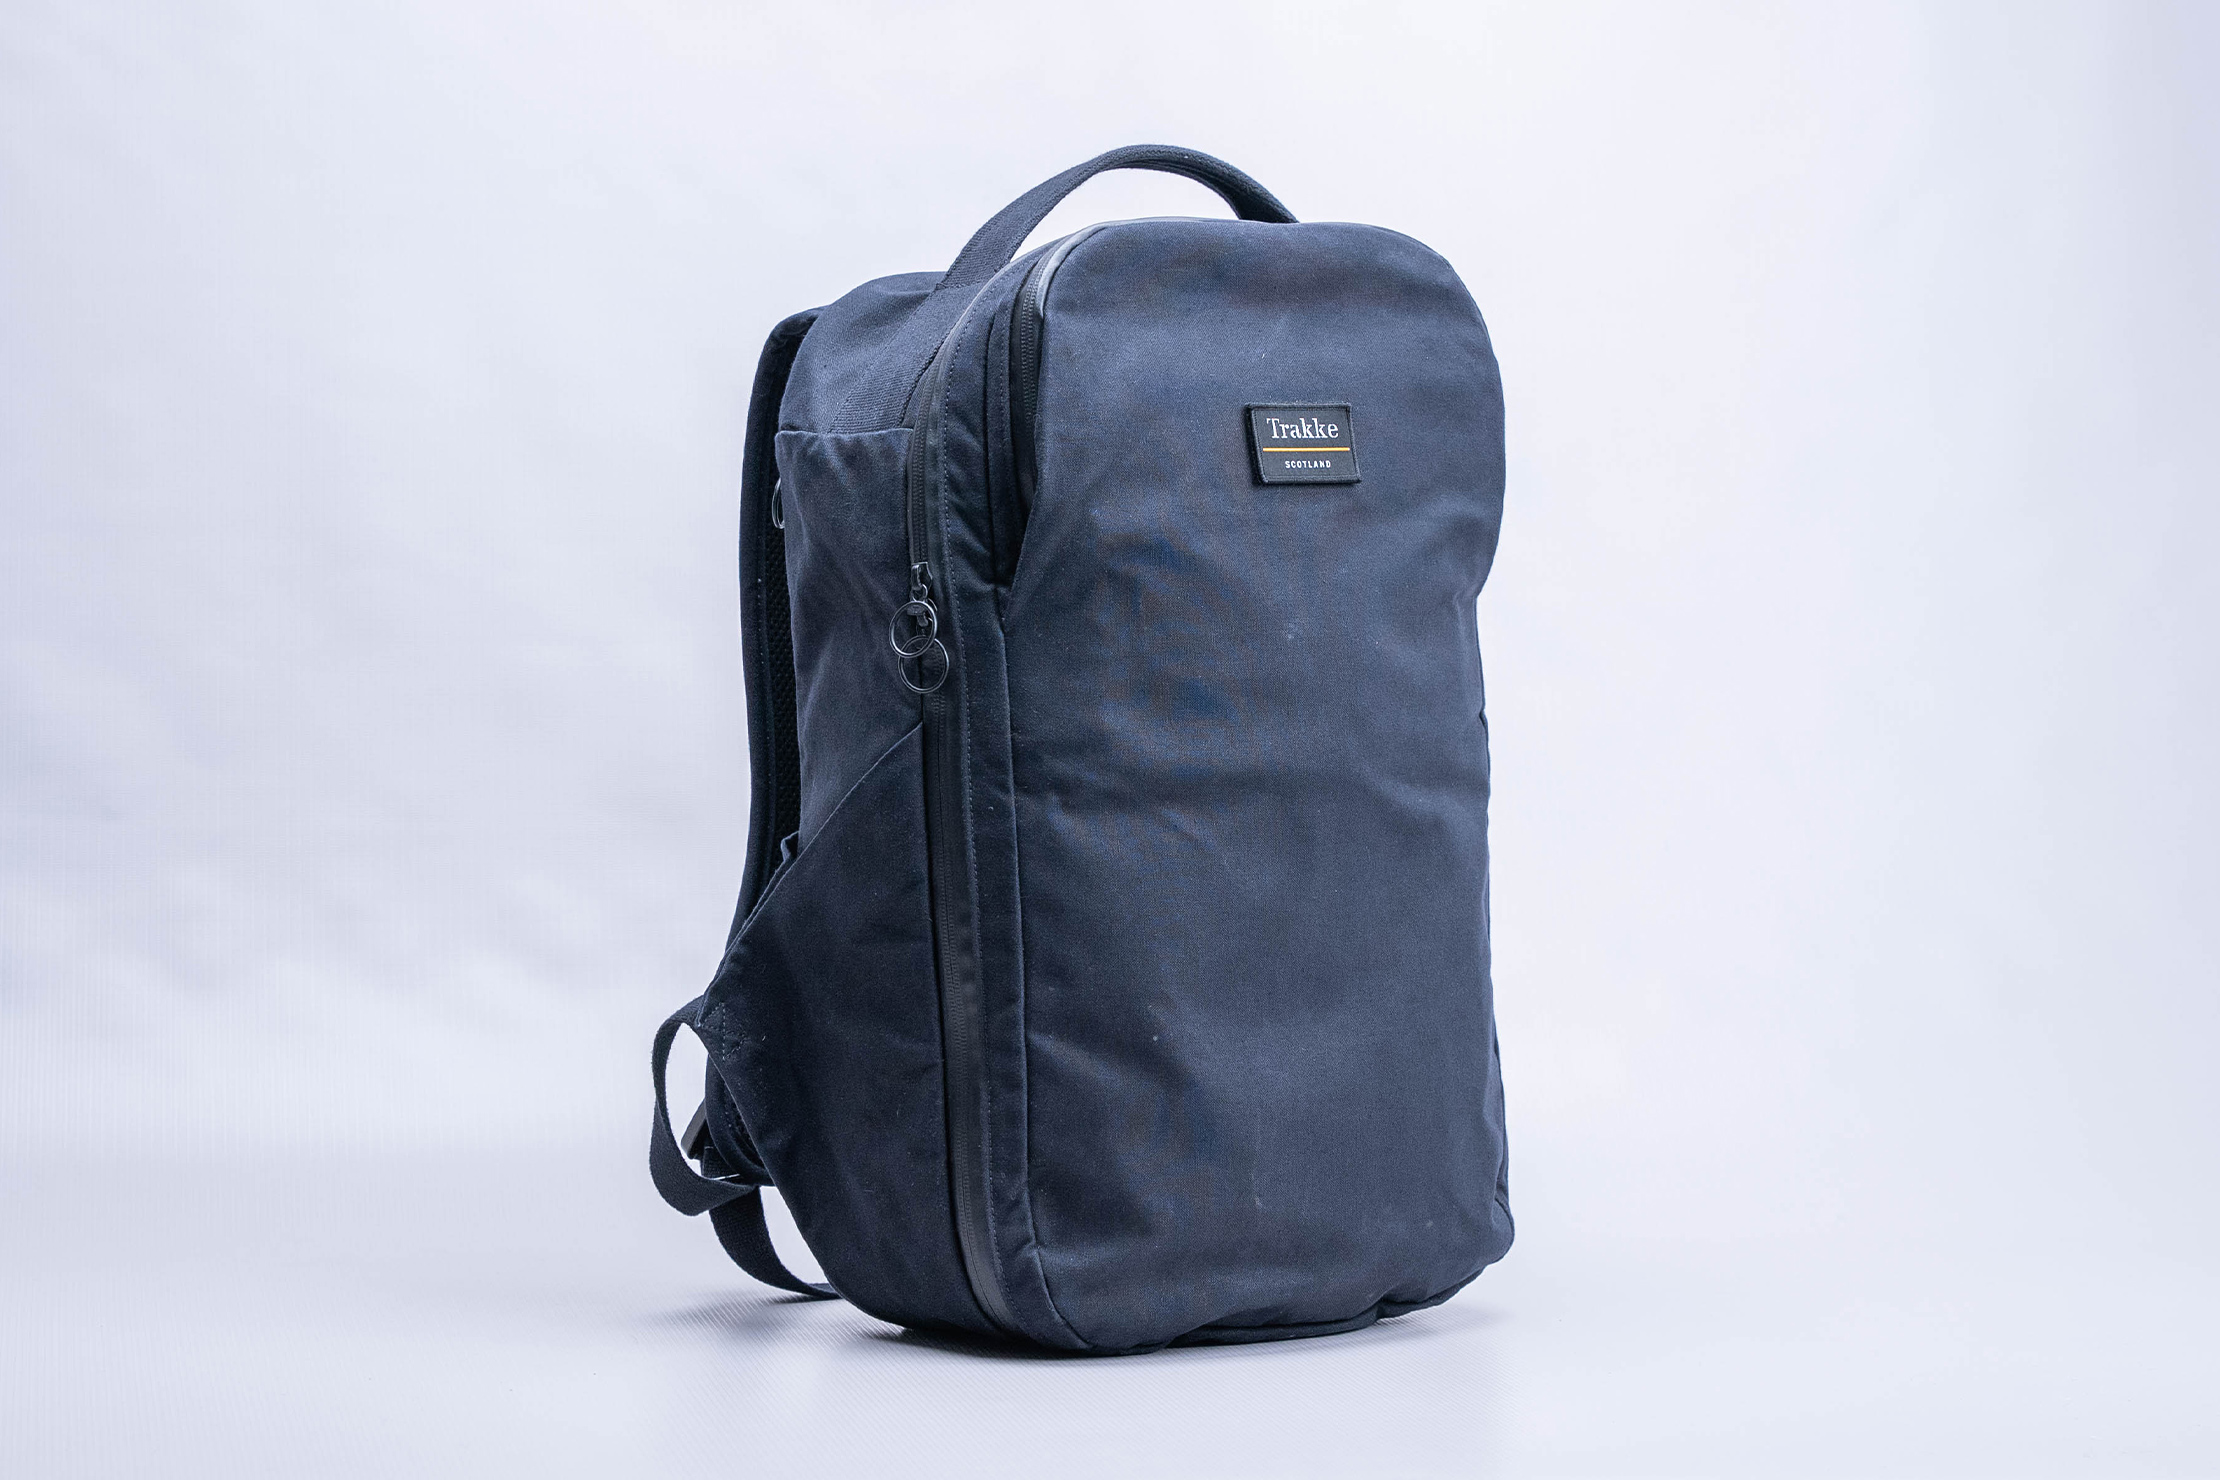 Trakke Storr Travel Backpack 25L Full